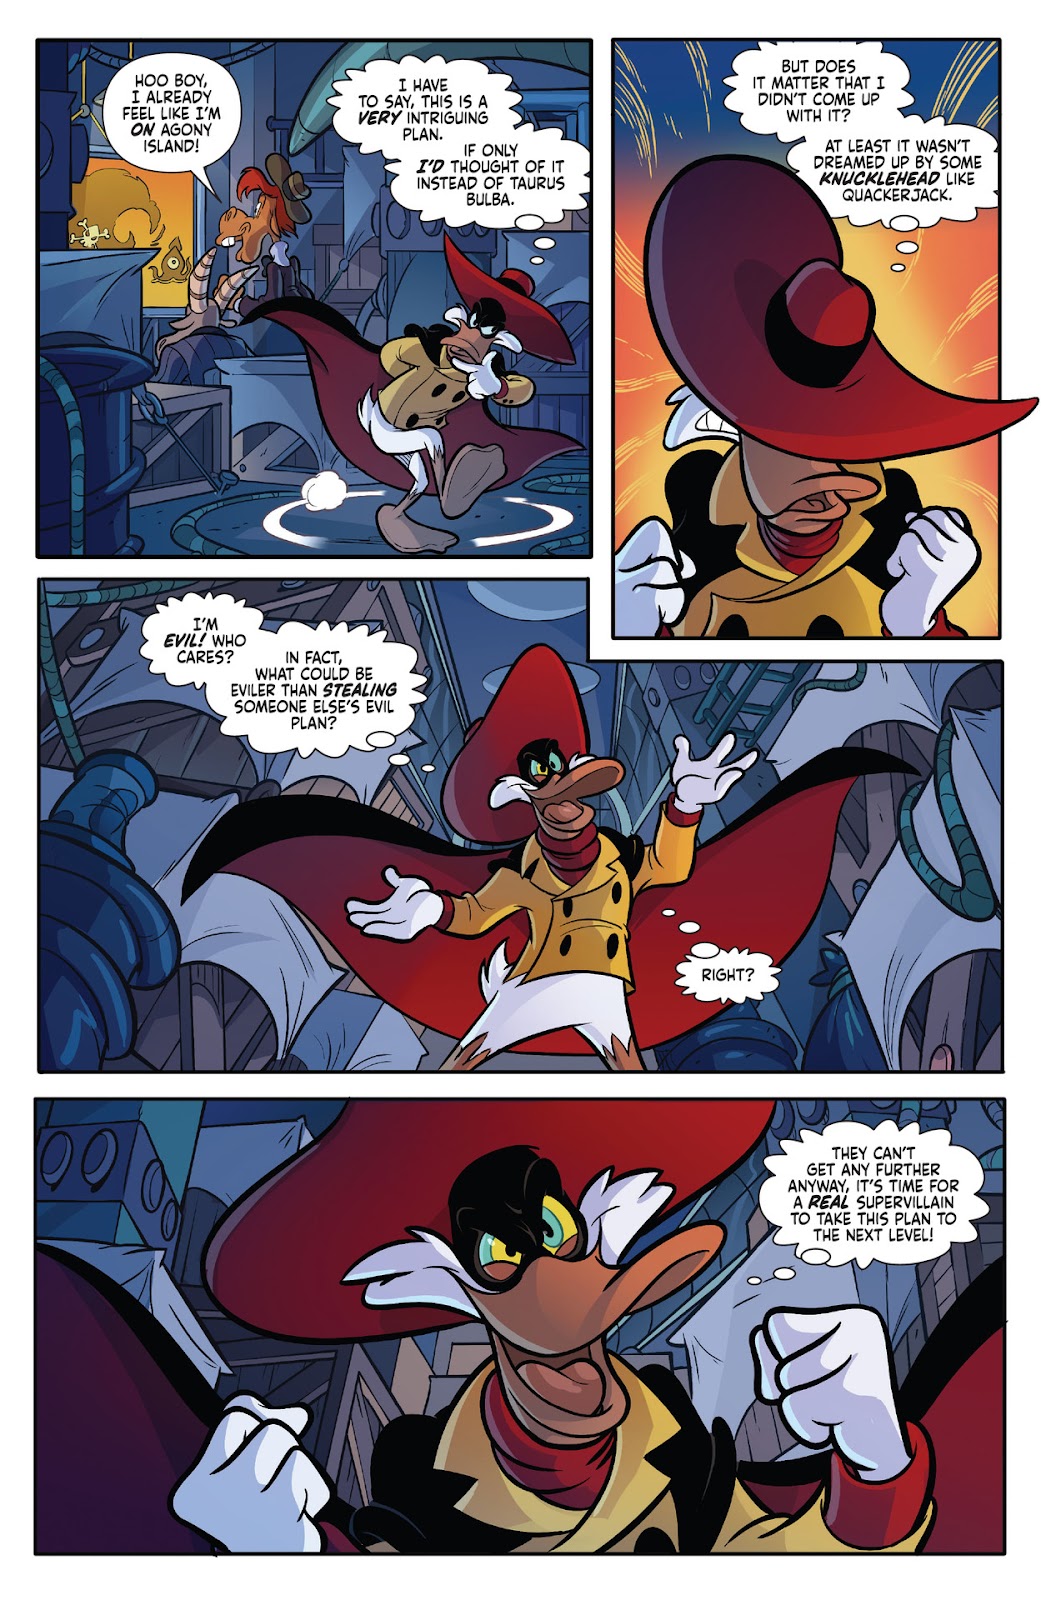 Darkwing Duck: Negaduck issue 1 - Page 25